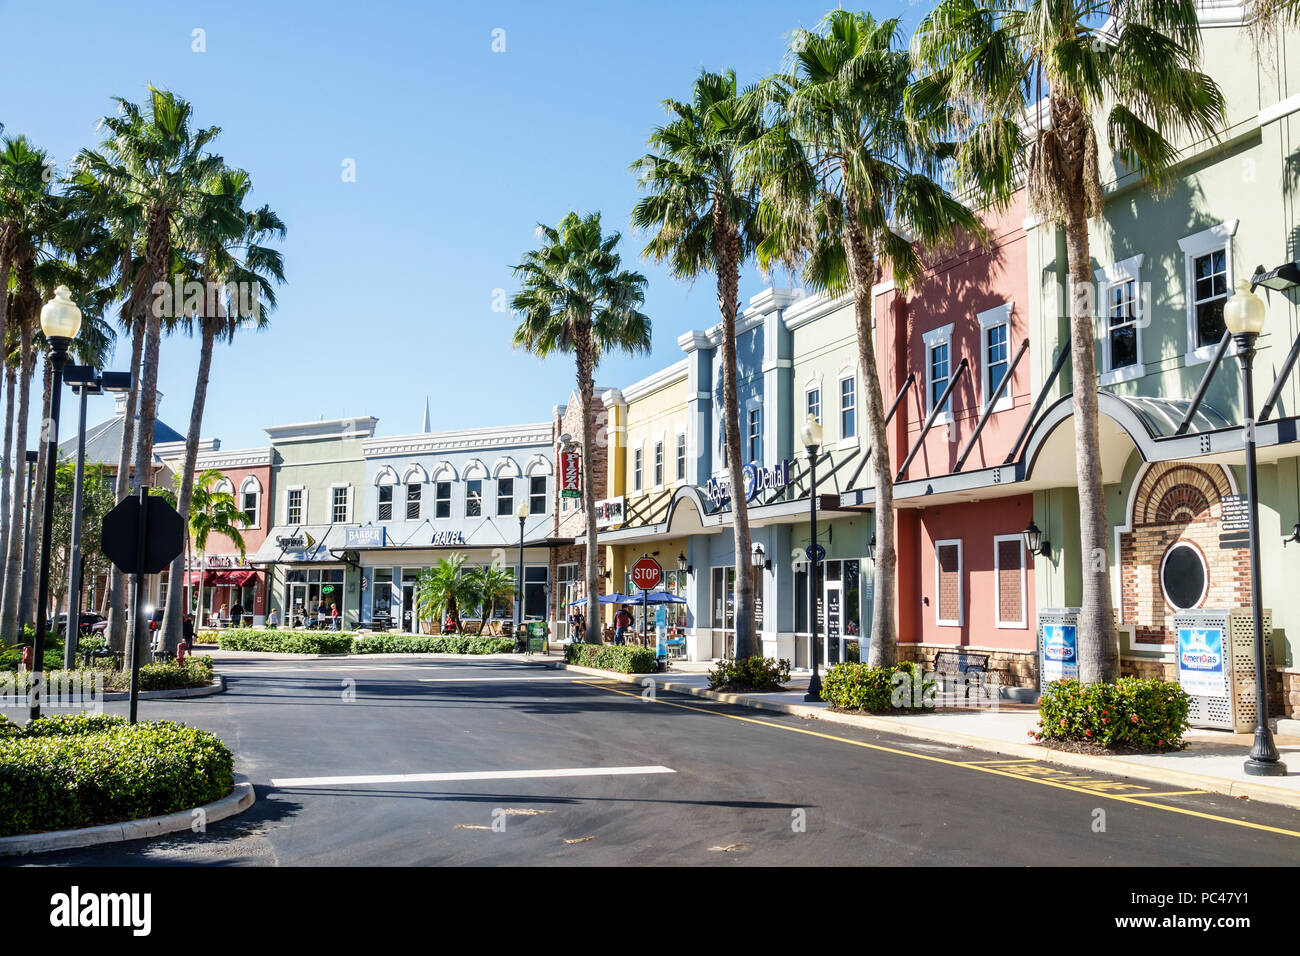 Port St. Saint Lucie Florida, Tradition, Einkaufszentrum, Geschäfte, Außenansicht, Parkplatzzufahrt, Sabal Palmen, FL171212007 Stockfoto